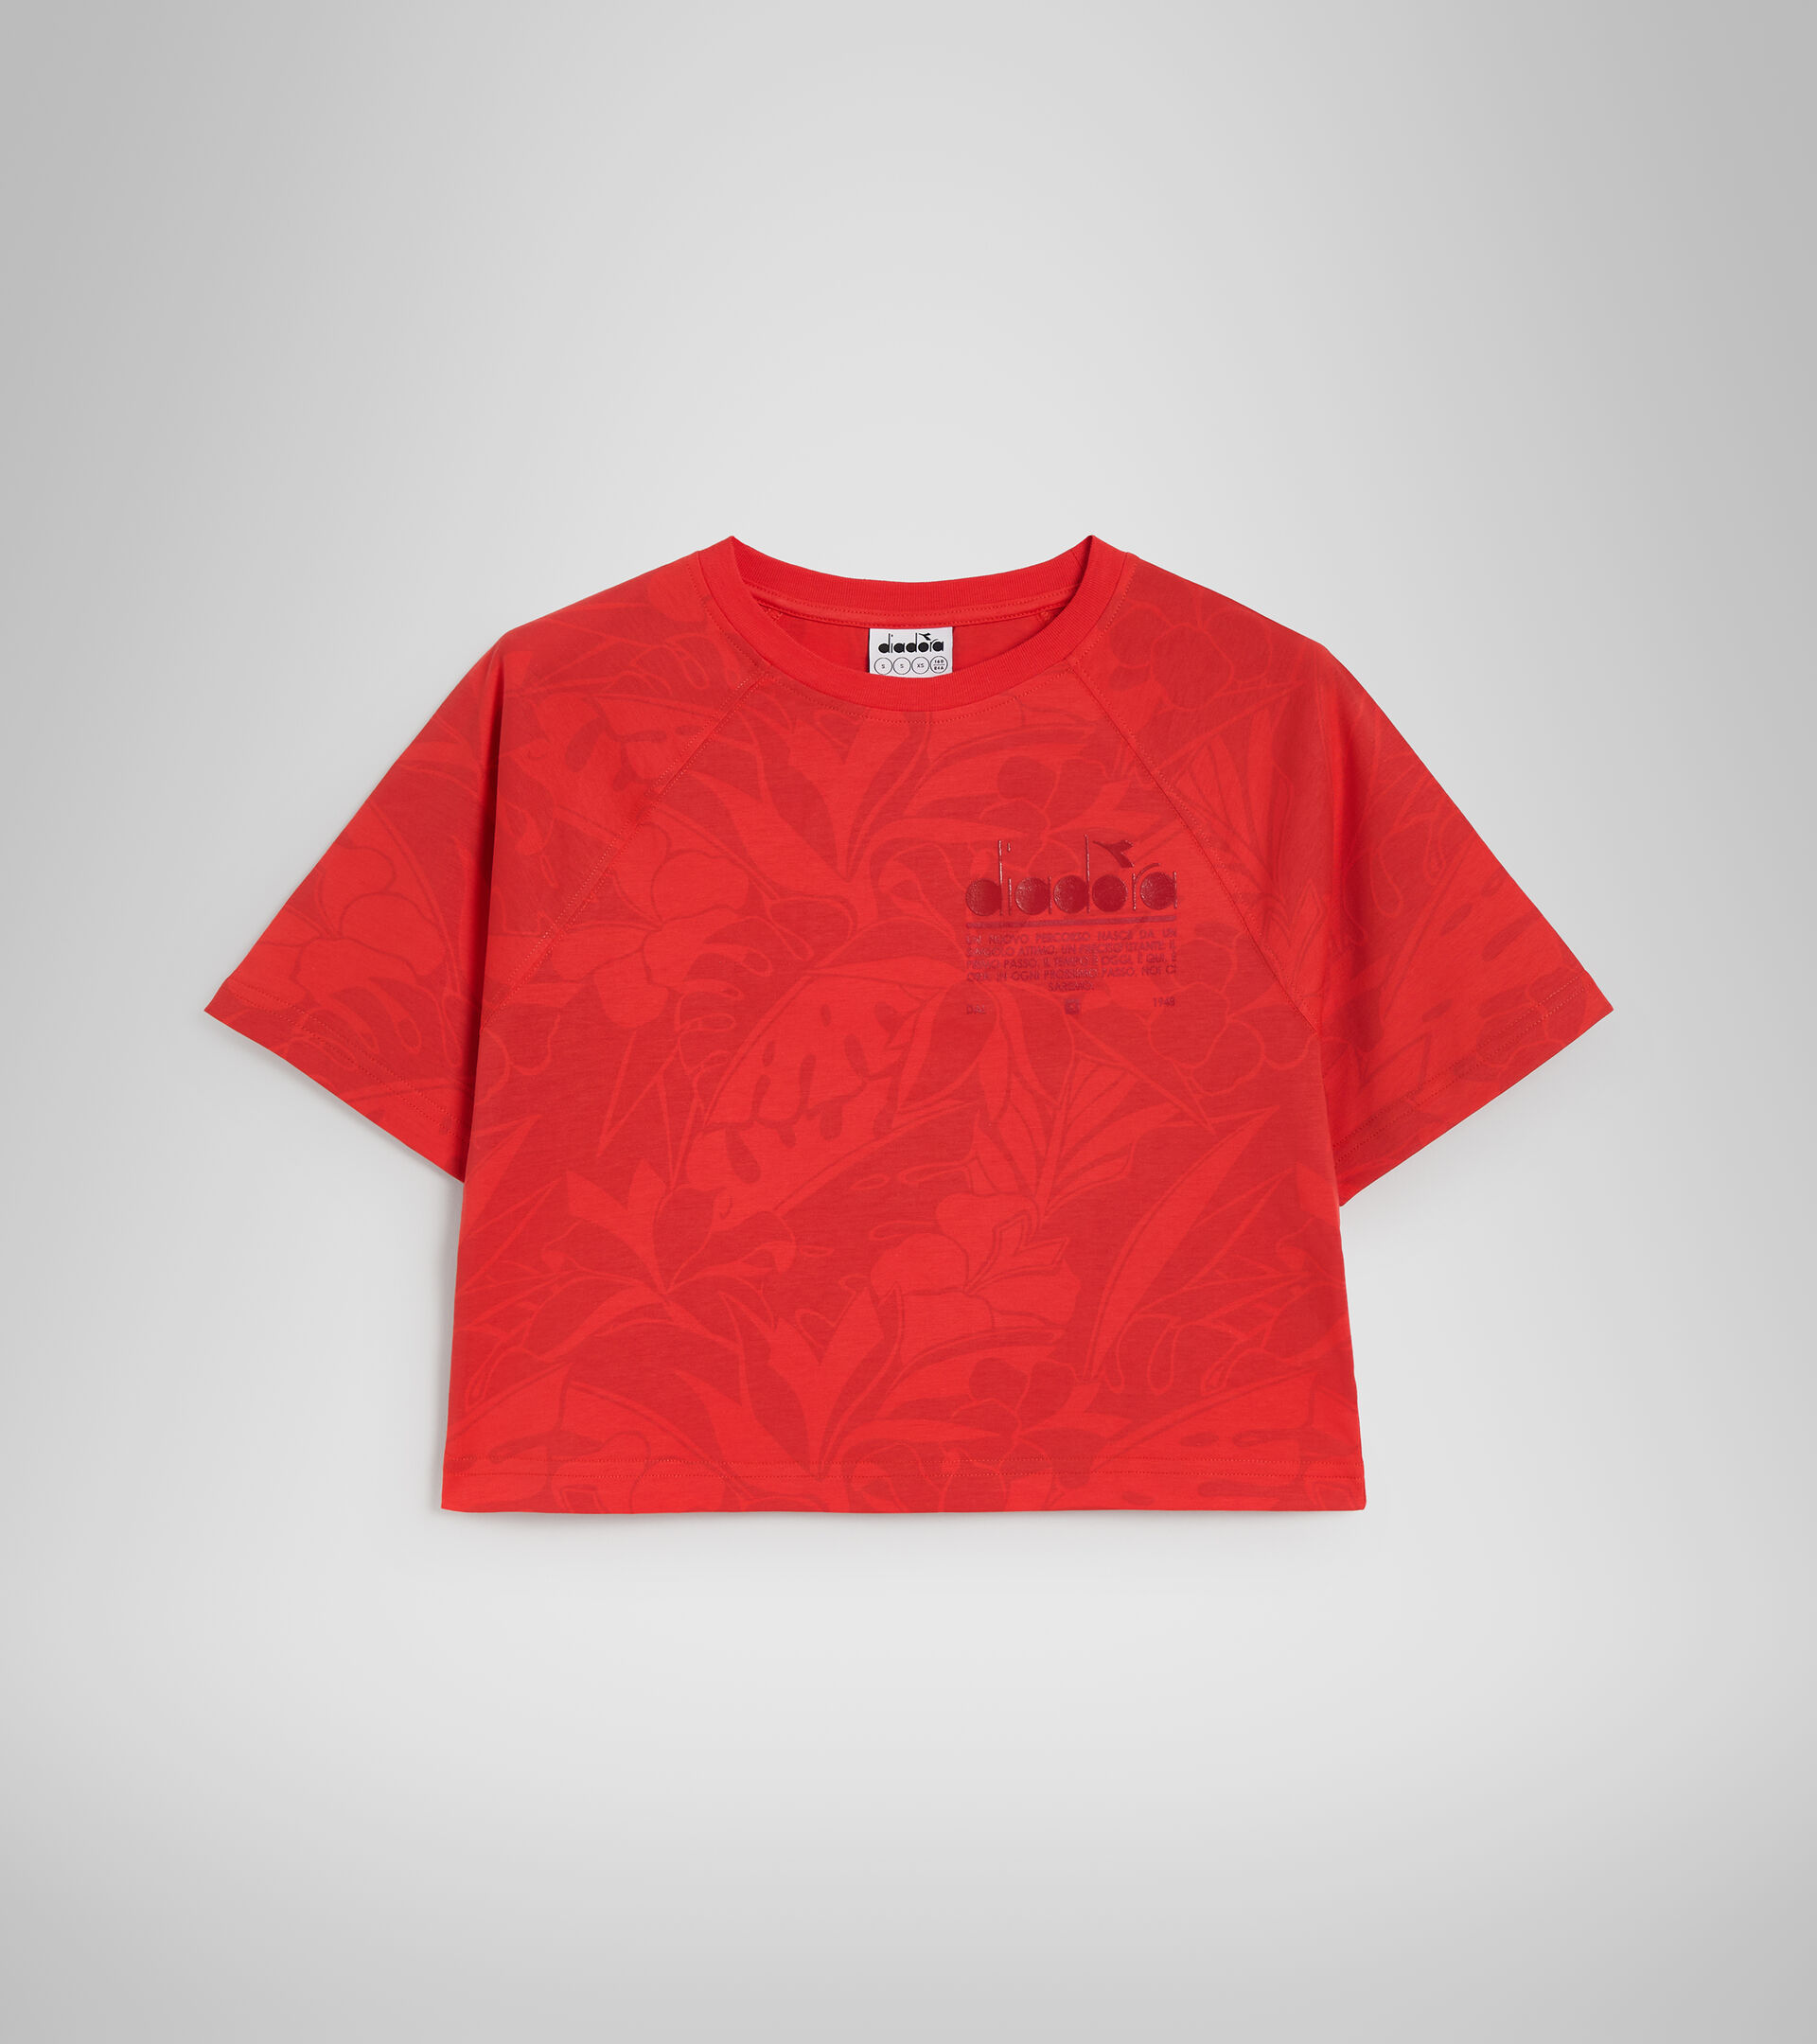 Cotton T-shirt - Women L. T-SHIRT SS CROP MANIFESTO POPPY RED - Diadora